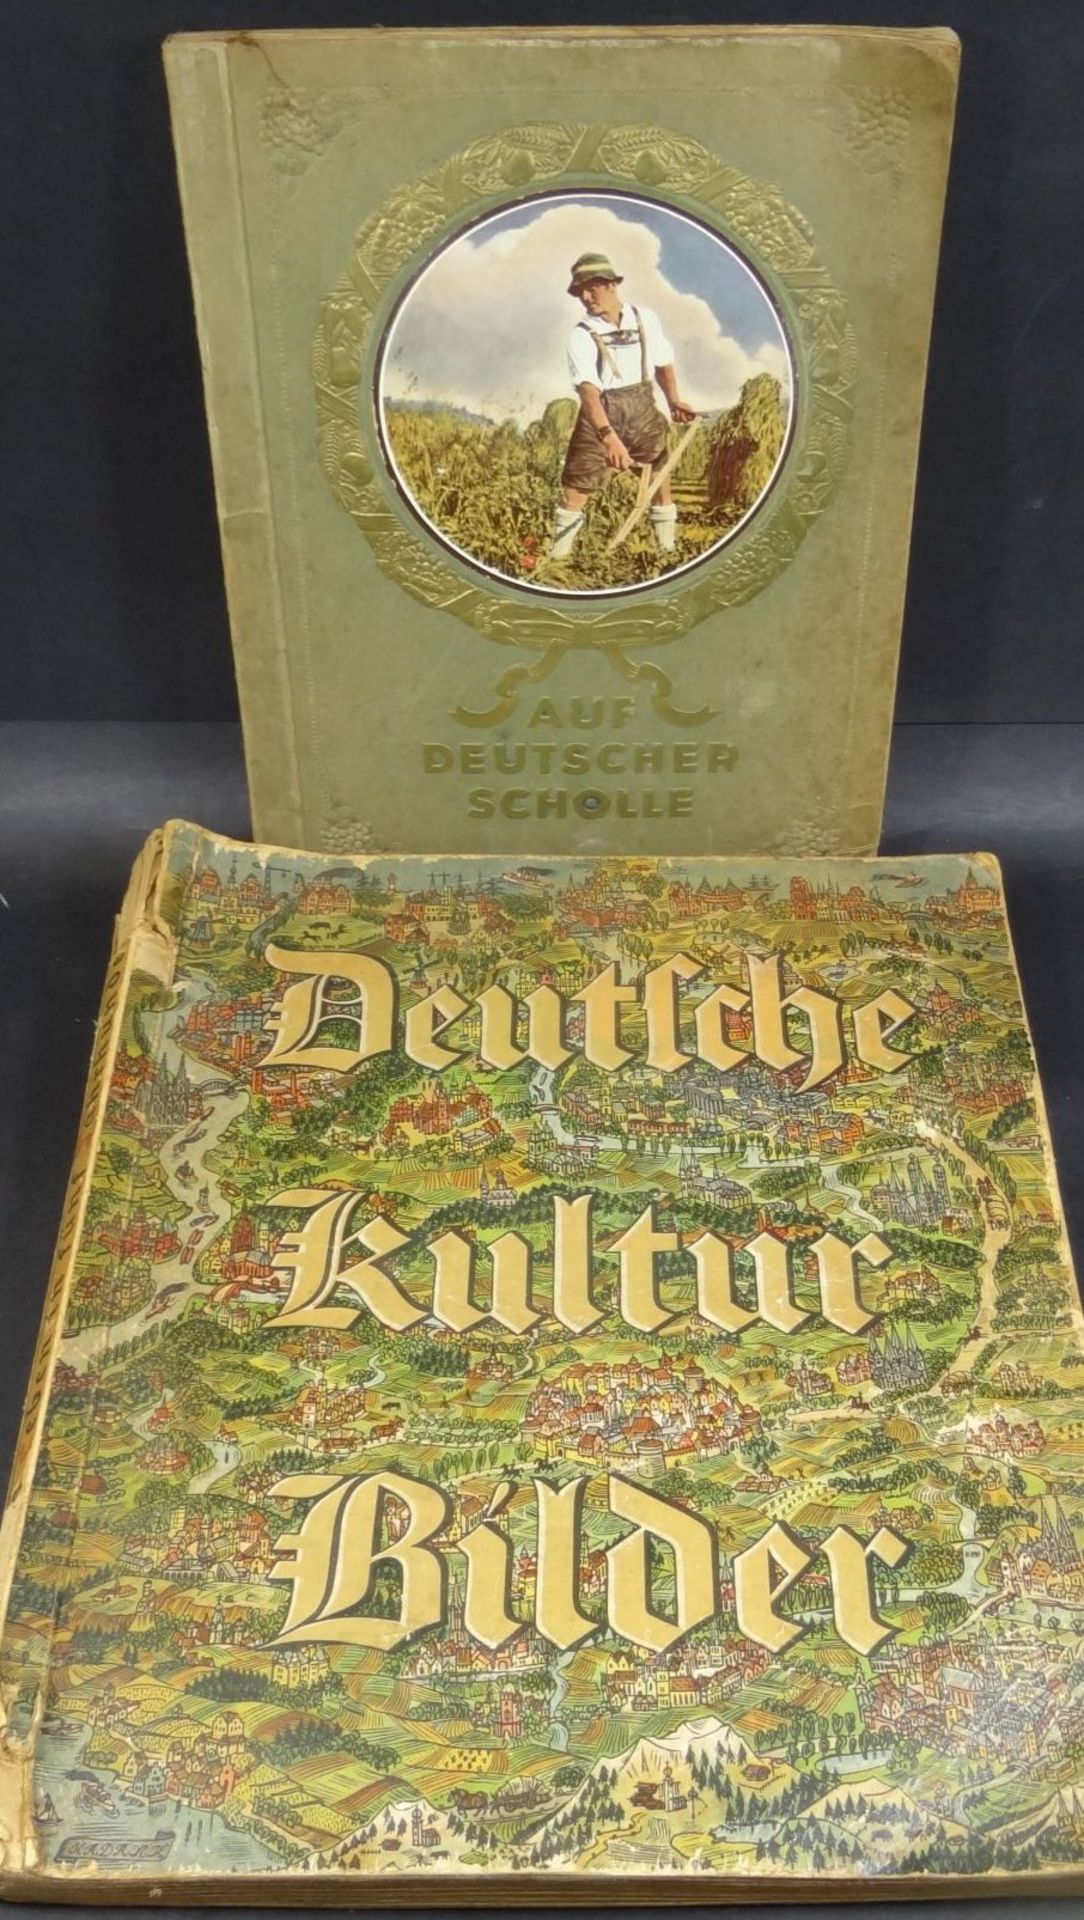 2x Sammelalben, Auf Deutscher Scholle und Deutsche Kulturbilder, 1934, wohl komplett, Alters-u.